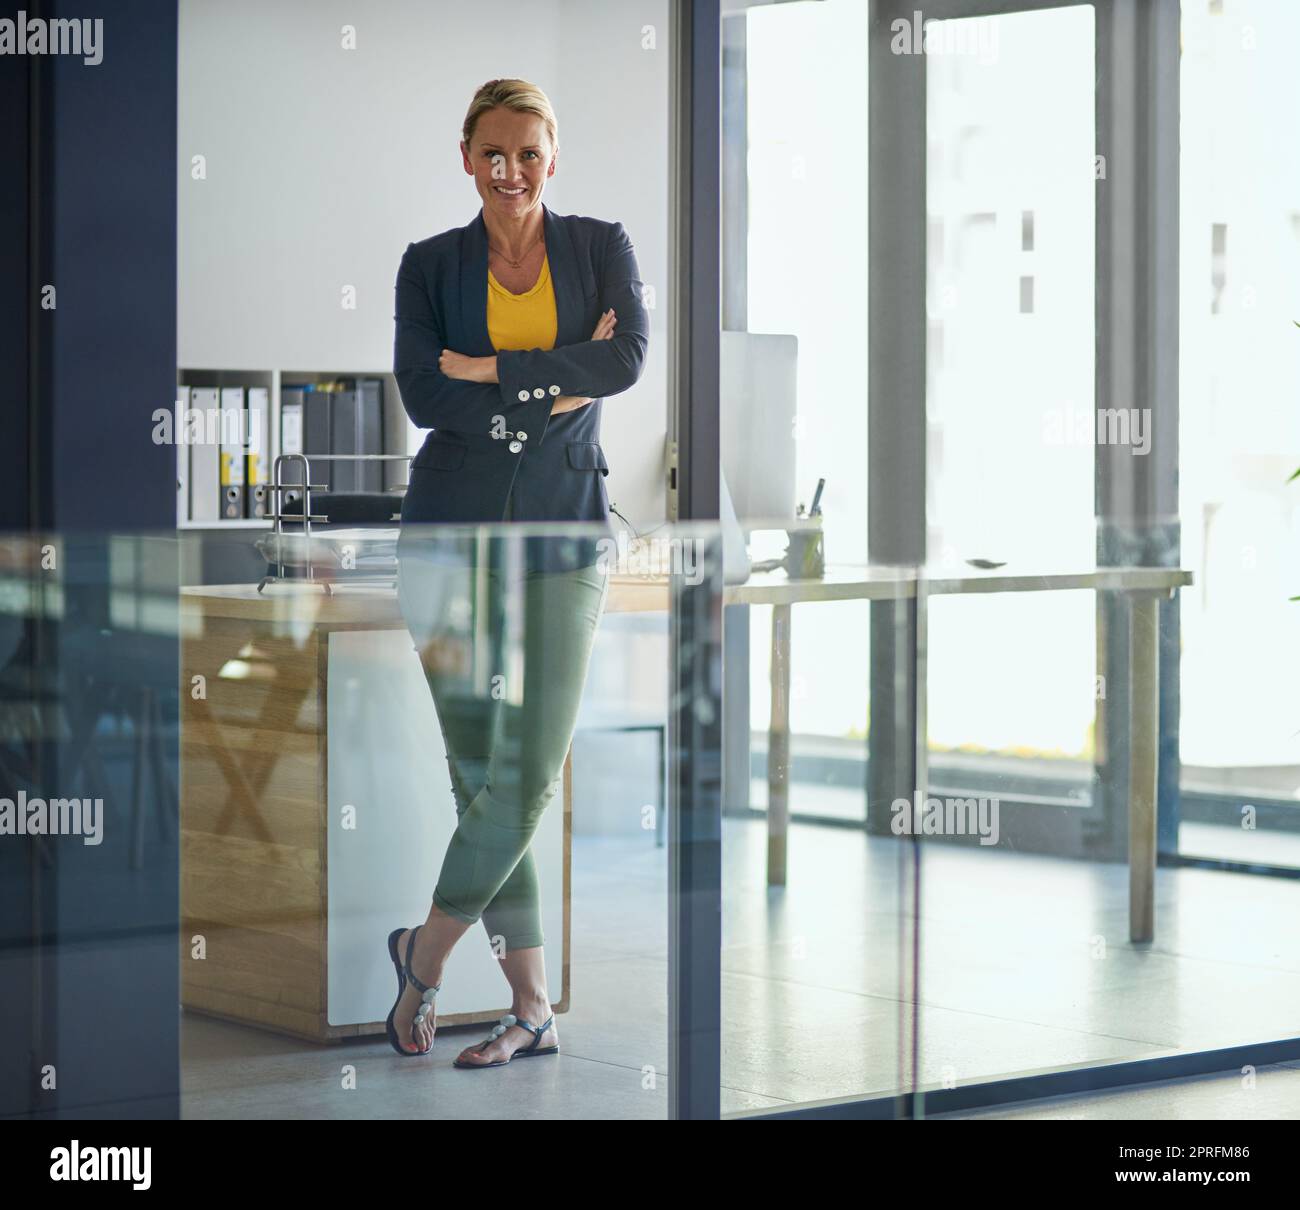 Se sentir confiant dans sa carrière. Portrait d'une femme d'affaires mûre debout dans un bureau. Banque D'Images